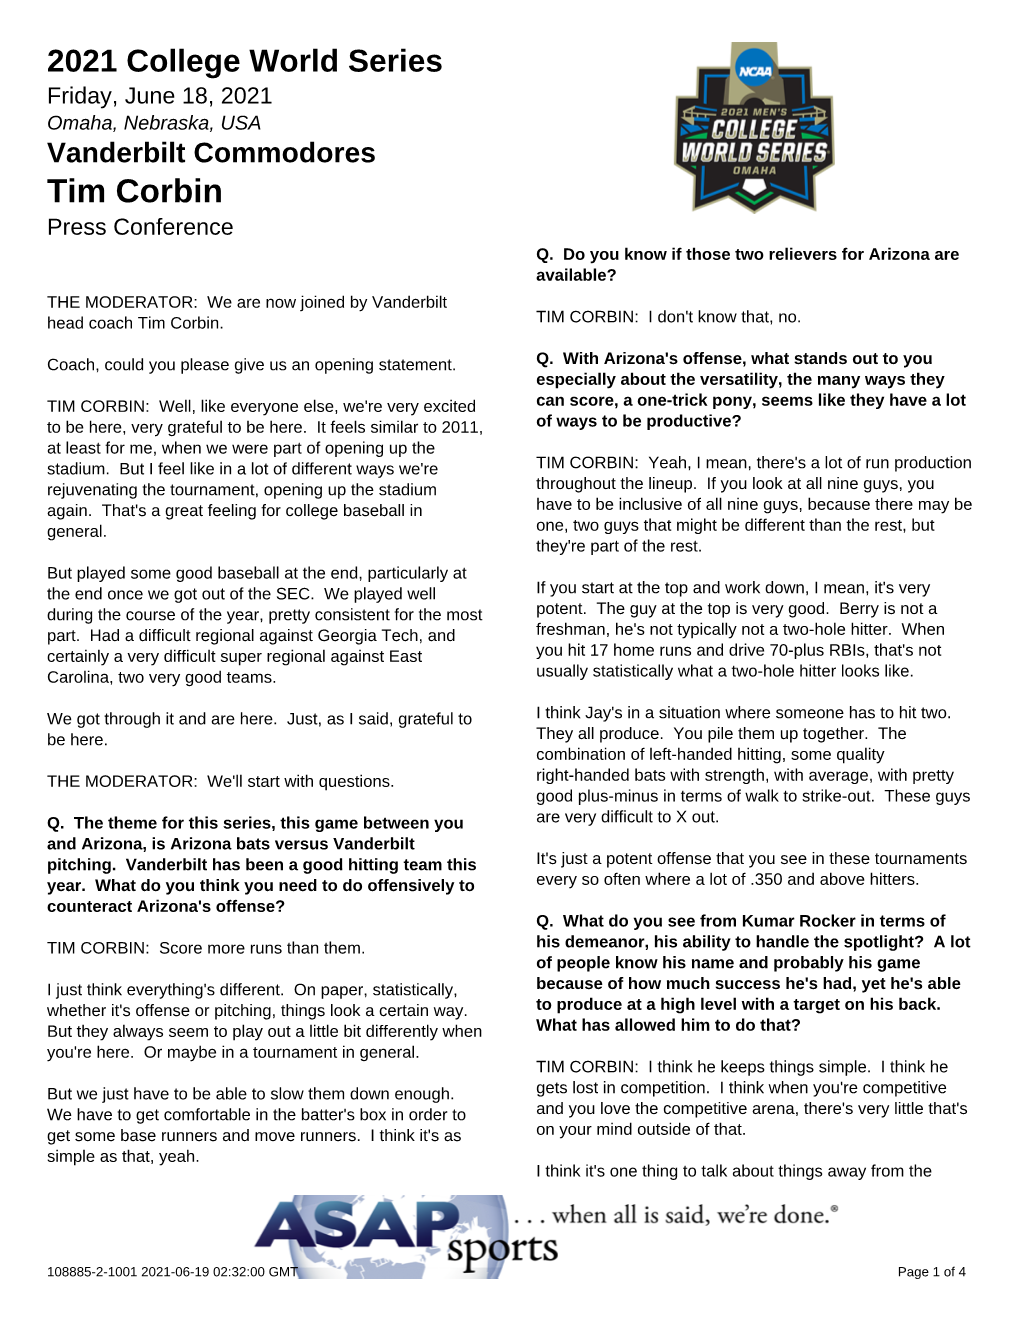 Tim Corbin Press Conference Q